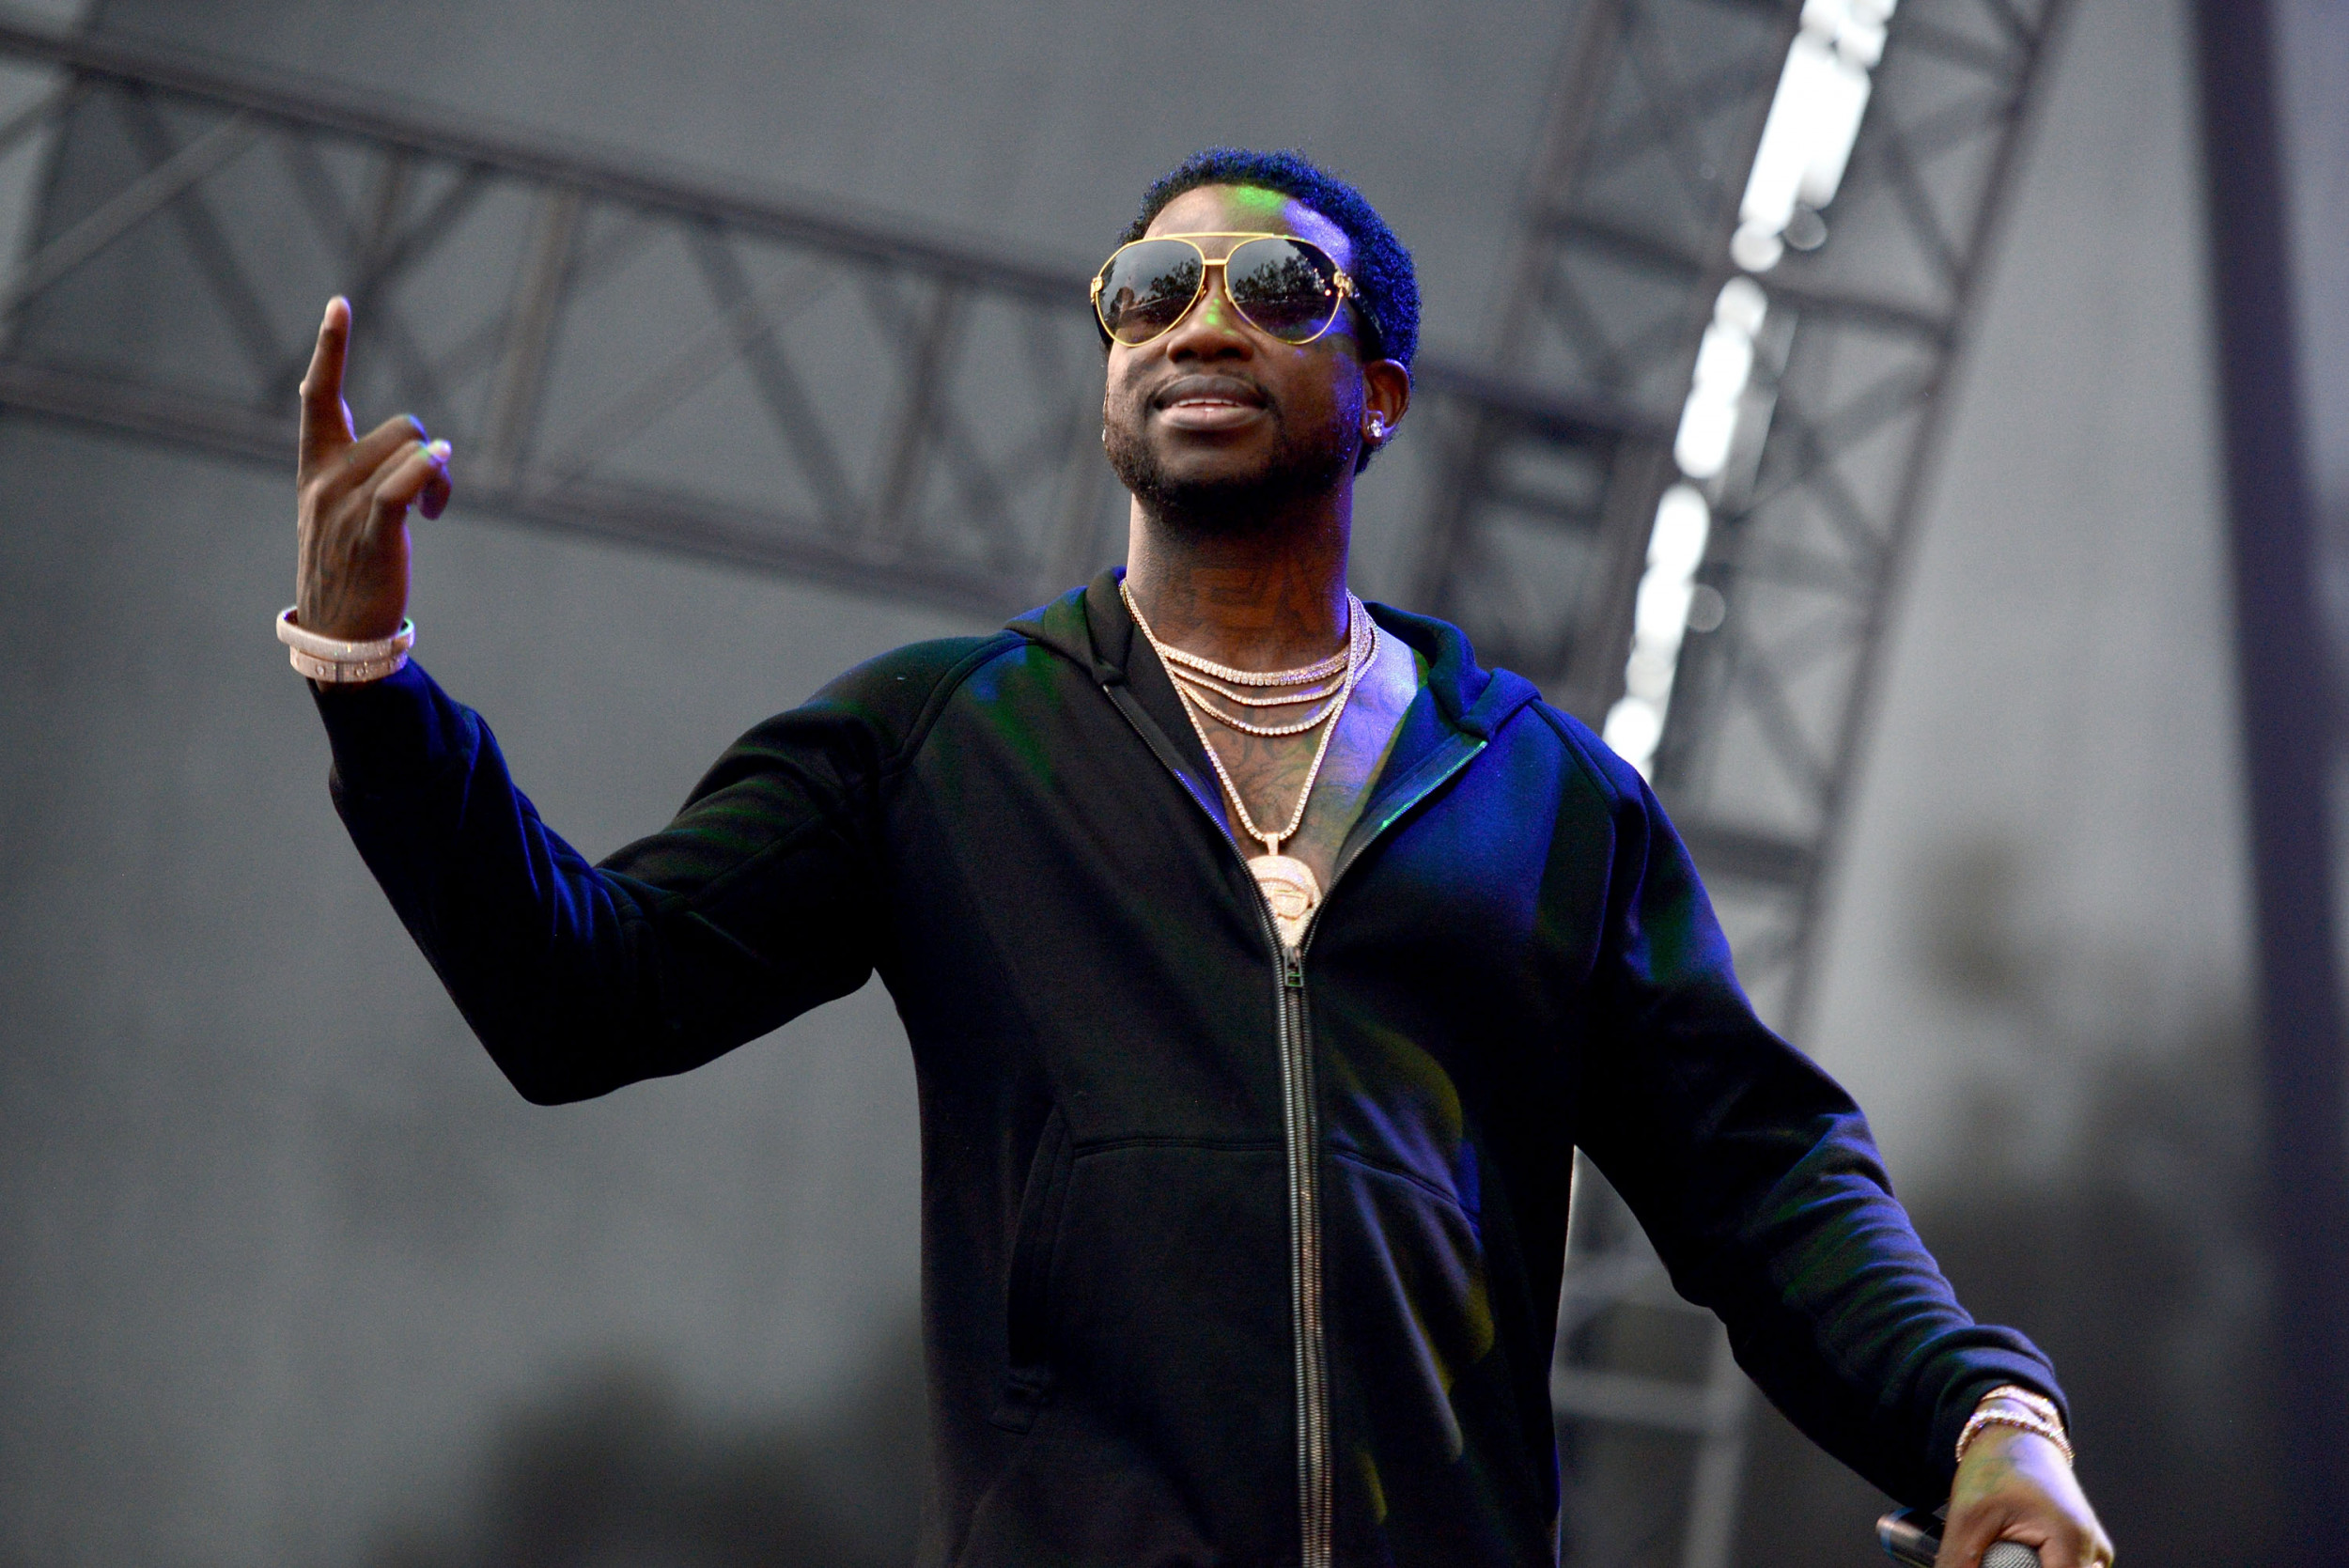 Rapper Gucci Mane Calls Atlantic Records 'Polite Racist' and Wants